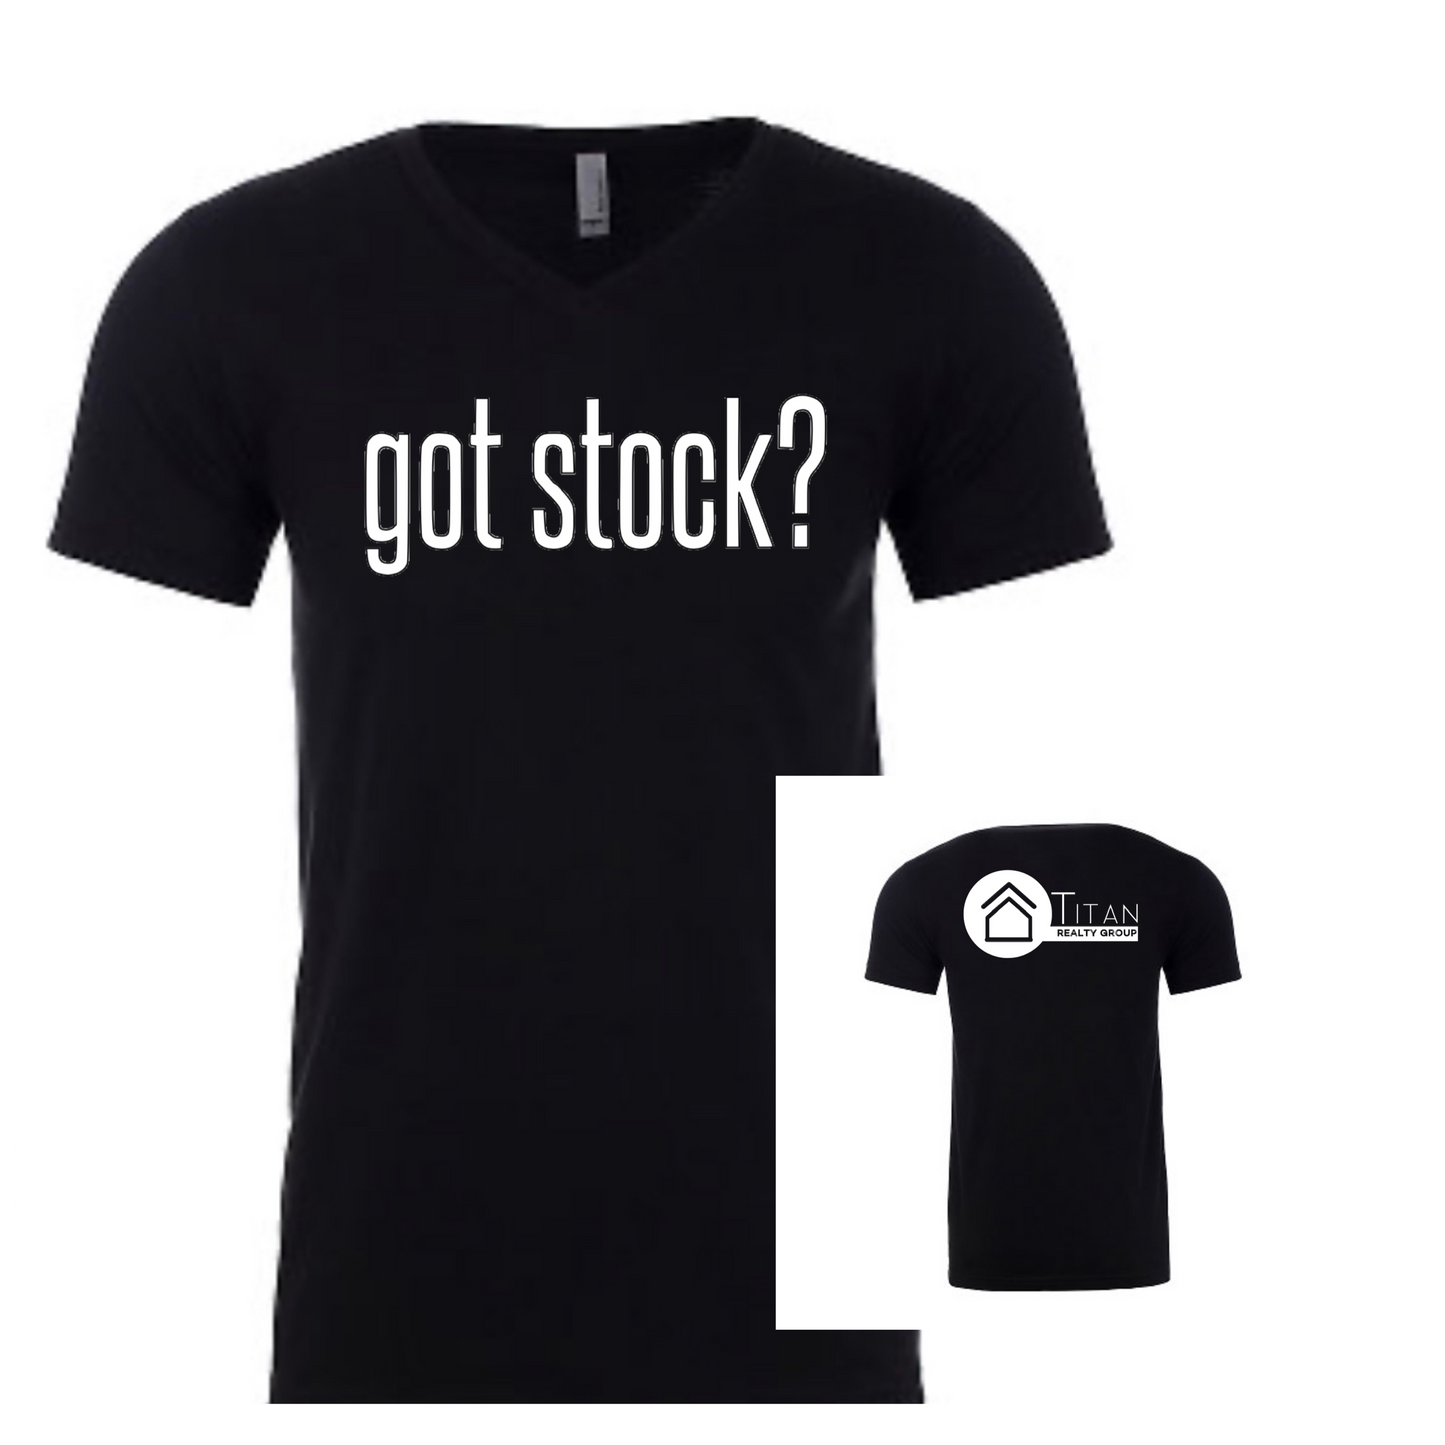 Got Stock? V-neck T-shirt